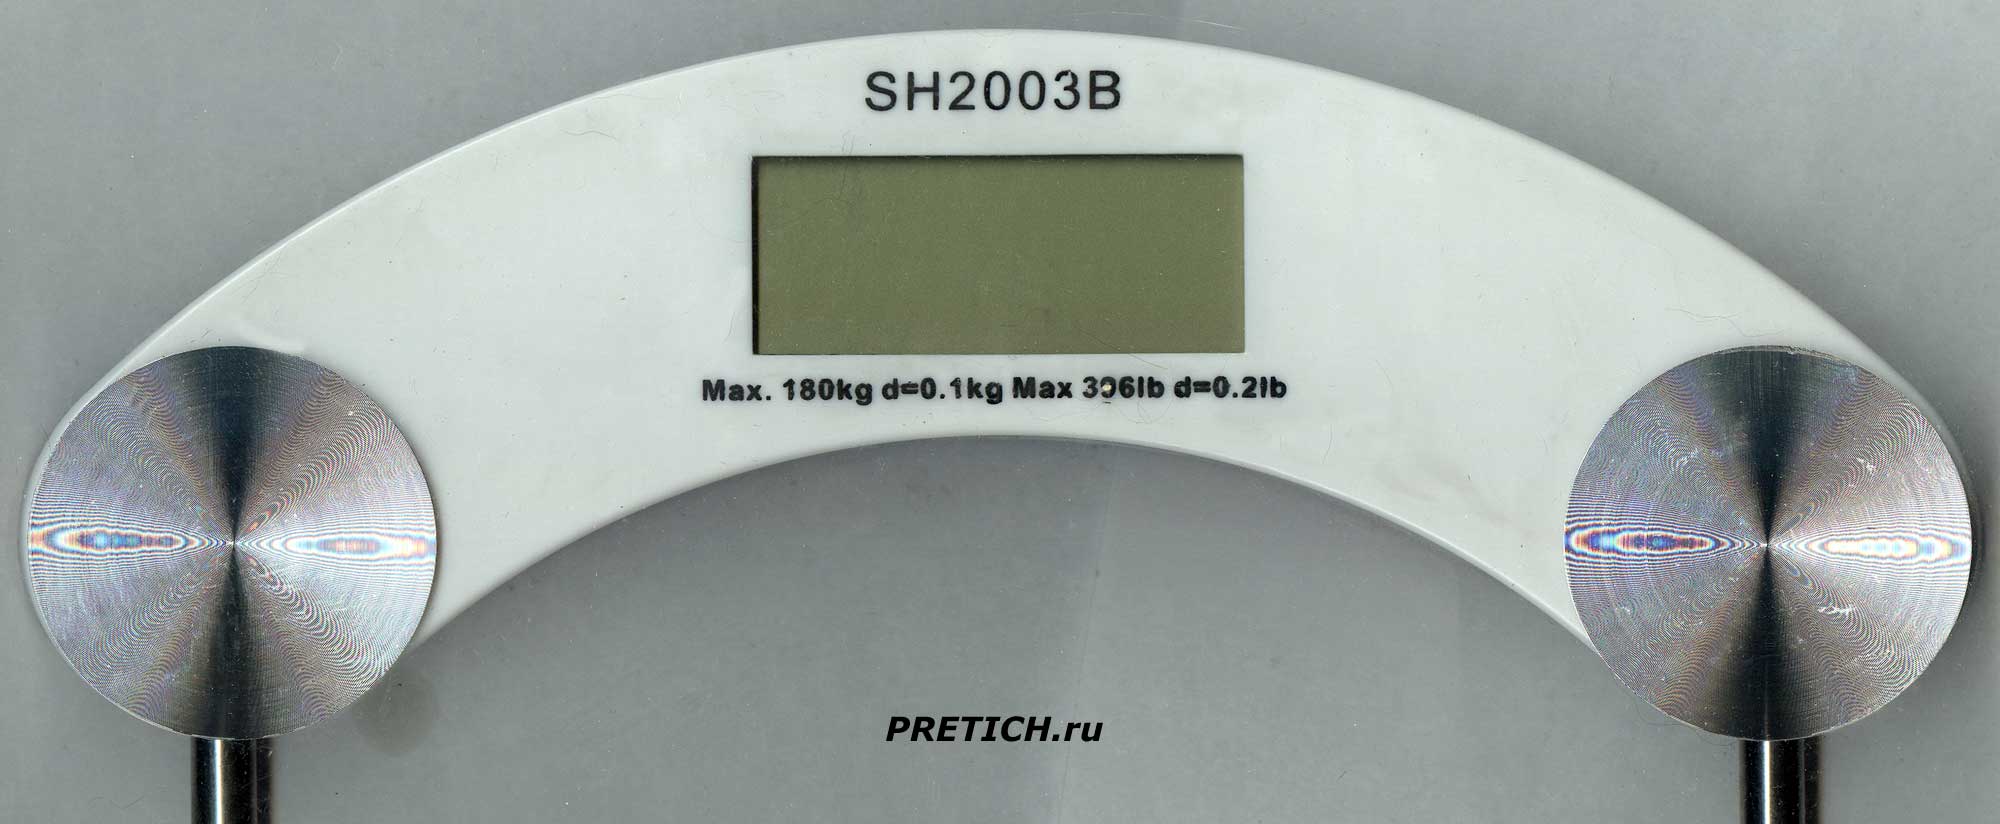 SH2003B дисплей, как устроено и как настроить весы